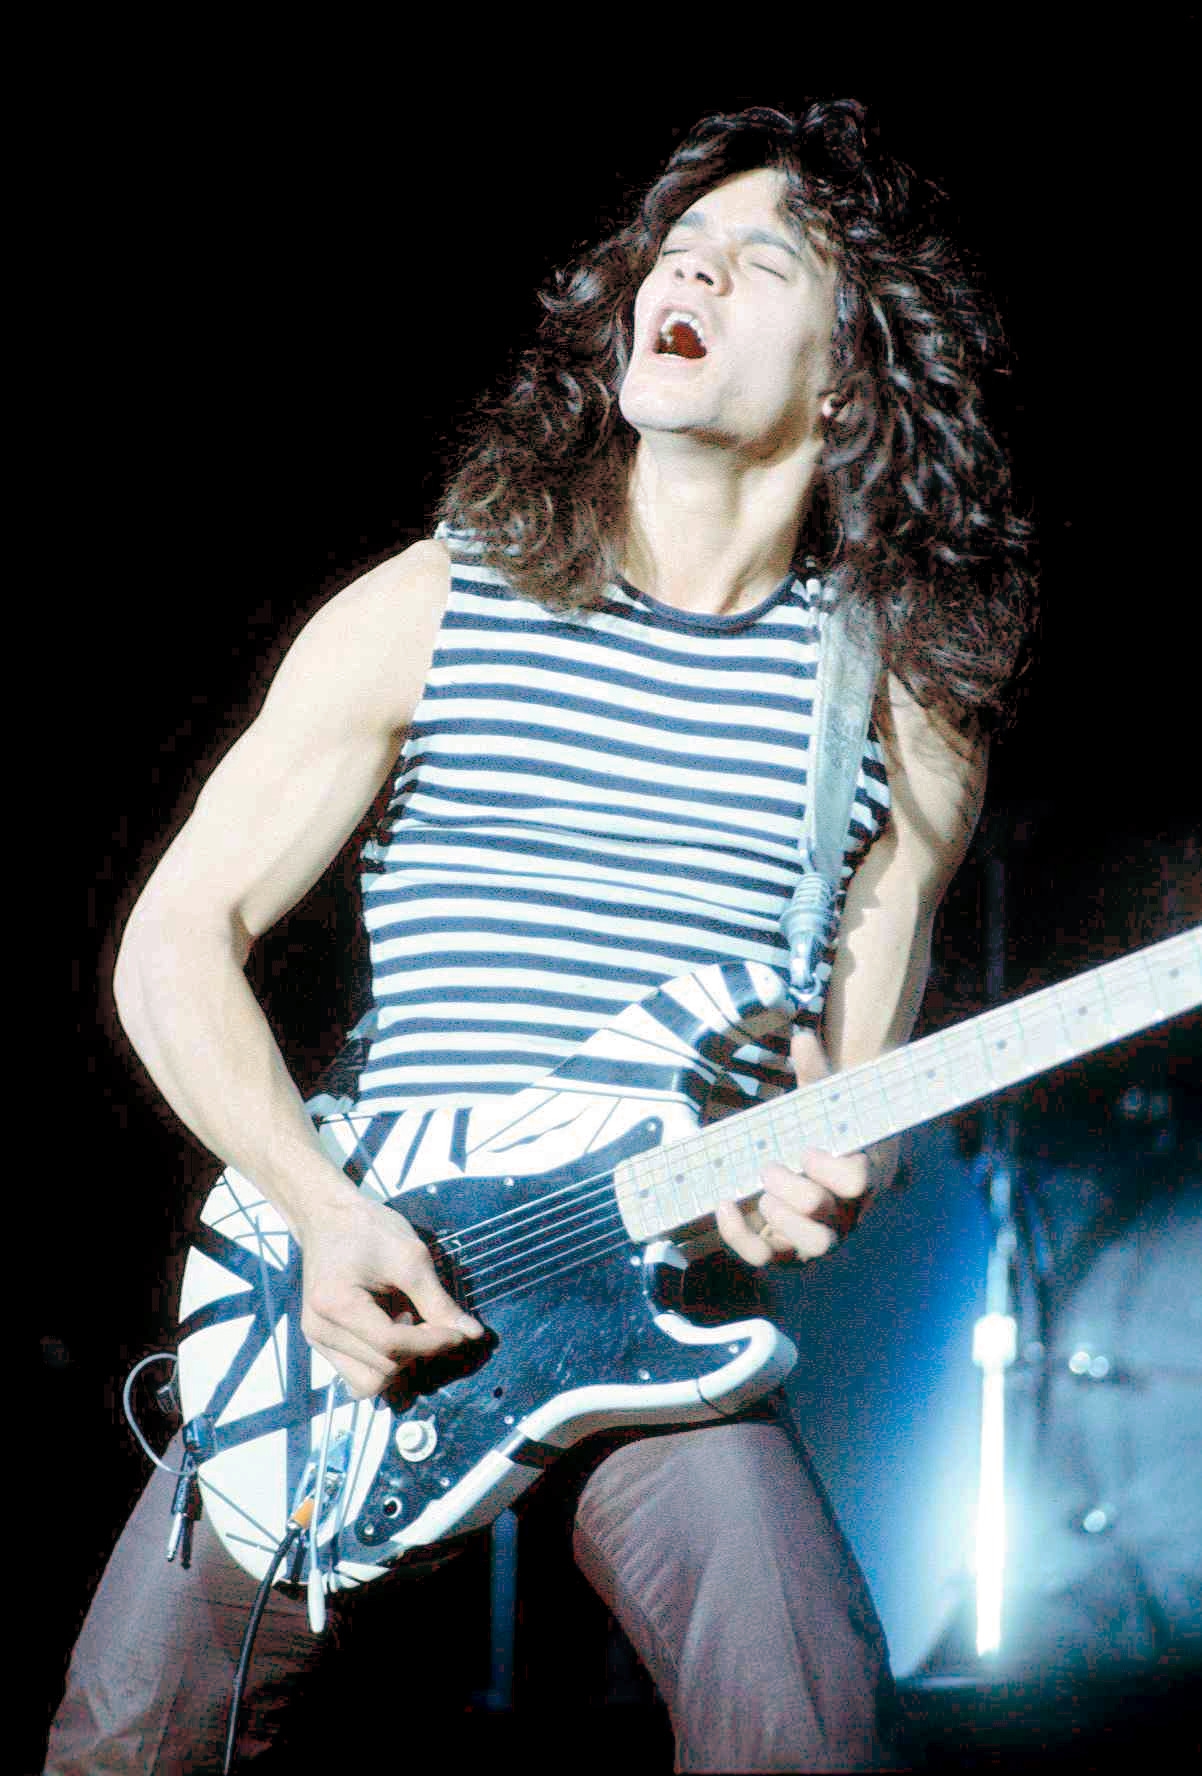 auteur Eddie Van Halen de la citation Si vous allez apprendre à jouer de la guitare en plomb, obtenez une guitare électrique. Cela ne doit pas être cher. Les guitares acoustiques ne sont pas bonnes pour apprendre le plomb, car vous ne pouvez pas jouer très haut sur le cou Et ils prennent des cordes de calibre plus lourds, ce qui rend difficile la pliage des notes